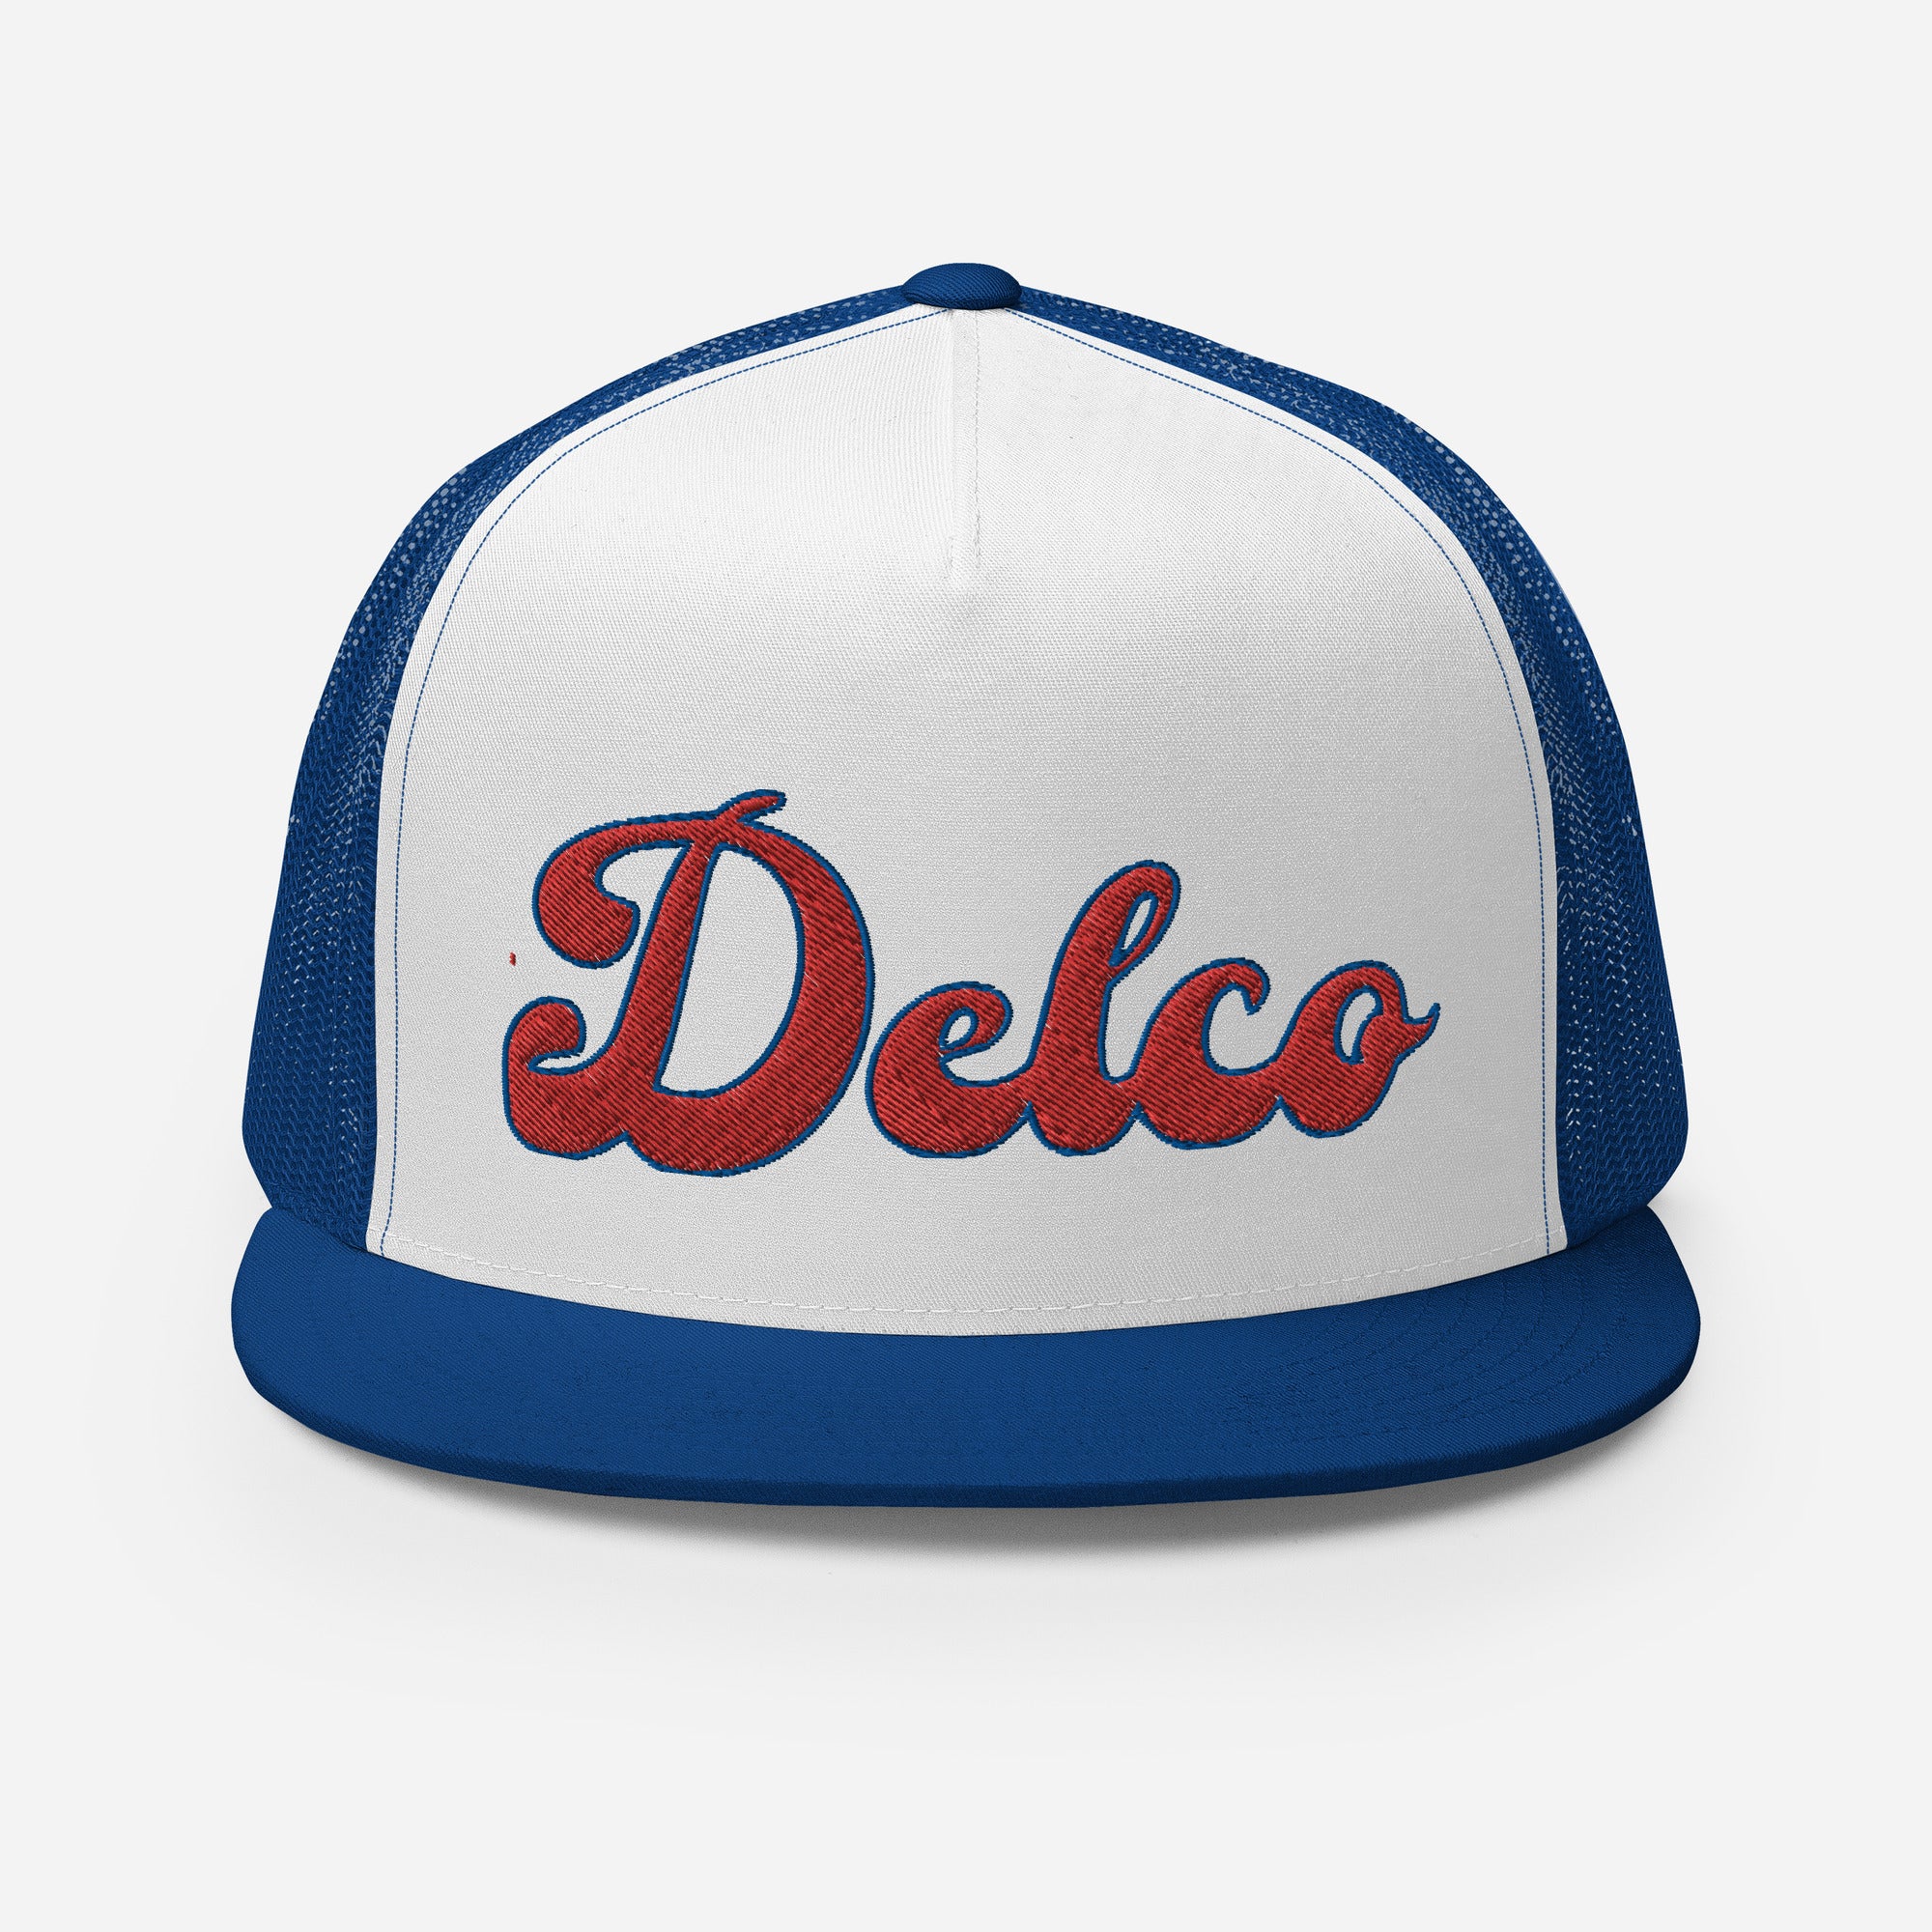 "Delco" Trucker Hat